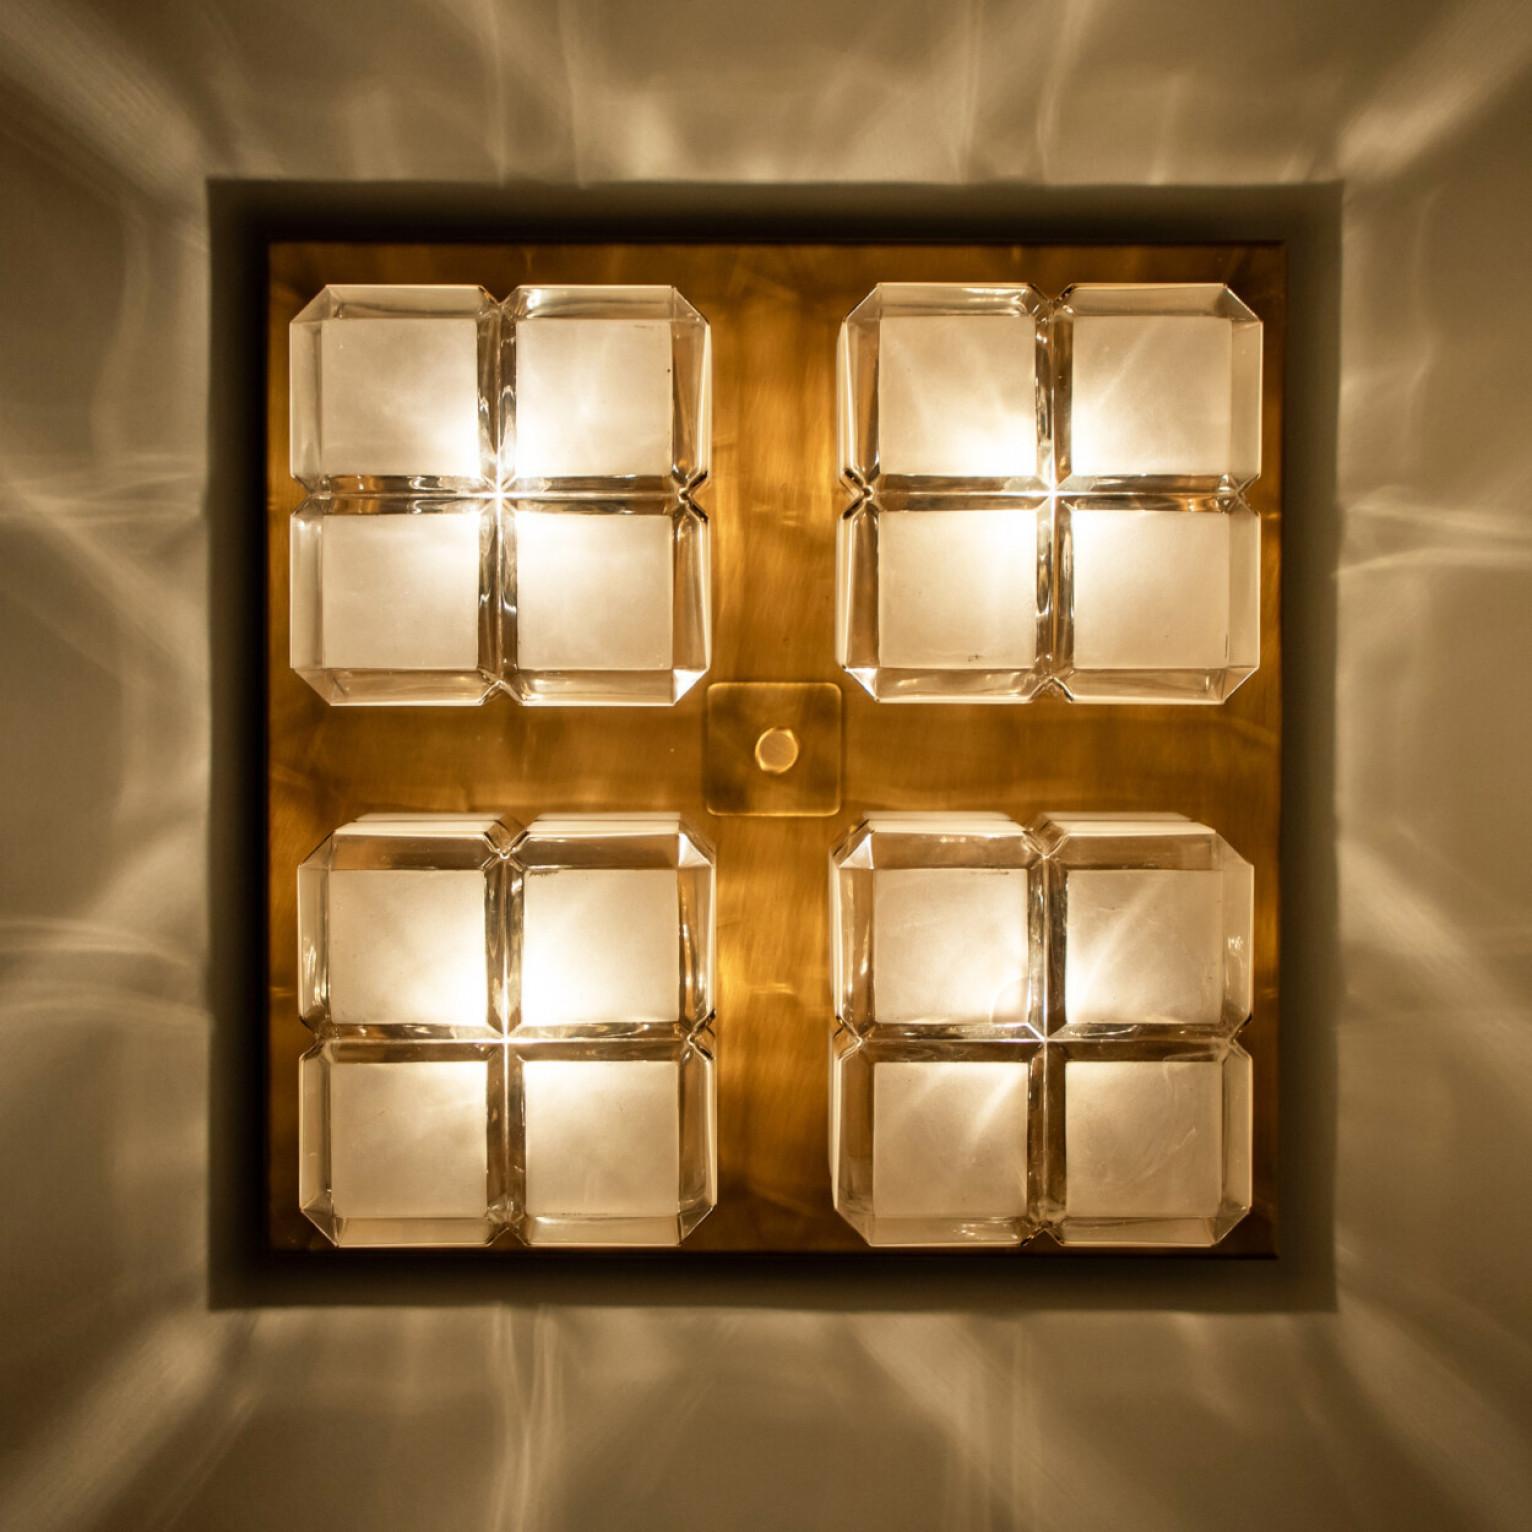 Quadratische Wandleuchten aus Milchglas mit goldenen Details. Hergestellt von Glashütte Limburg in Deutschland in den 1970er Jahren. (Anfang der 1970er Jahre).

Schöne Handwerkskunst. Minimalistisches, geometrisches und einfach geformtes